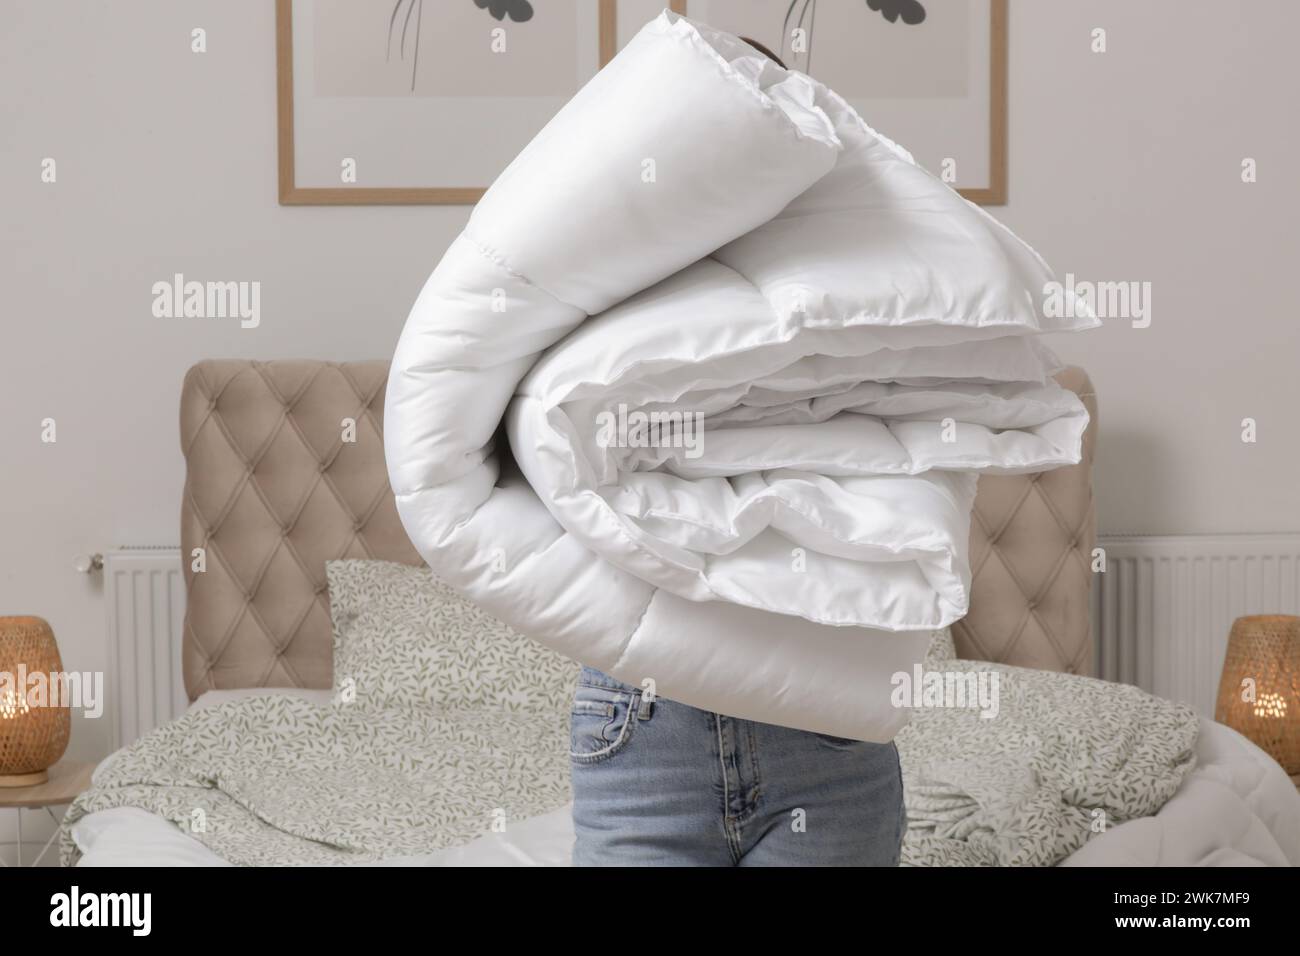 Donna che tiene un mucchio di soffici piumoni e cuscini piegati bianchi a casa nella sua camera da letto, stile di vita domestico accogliente, pulizia casalinga, riordino la camera da letto Foto Stock